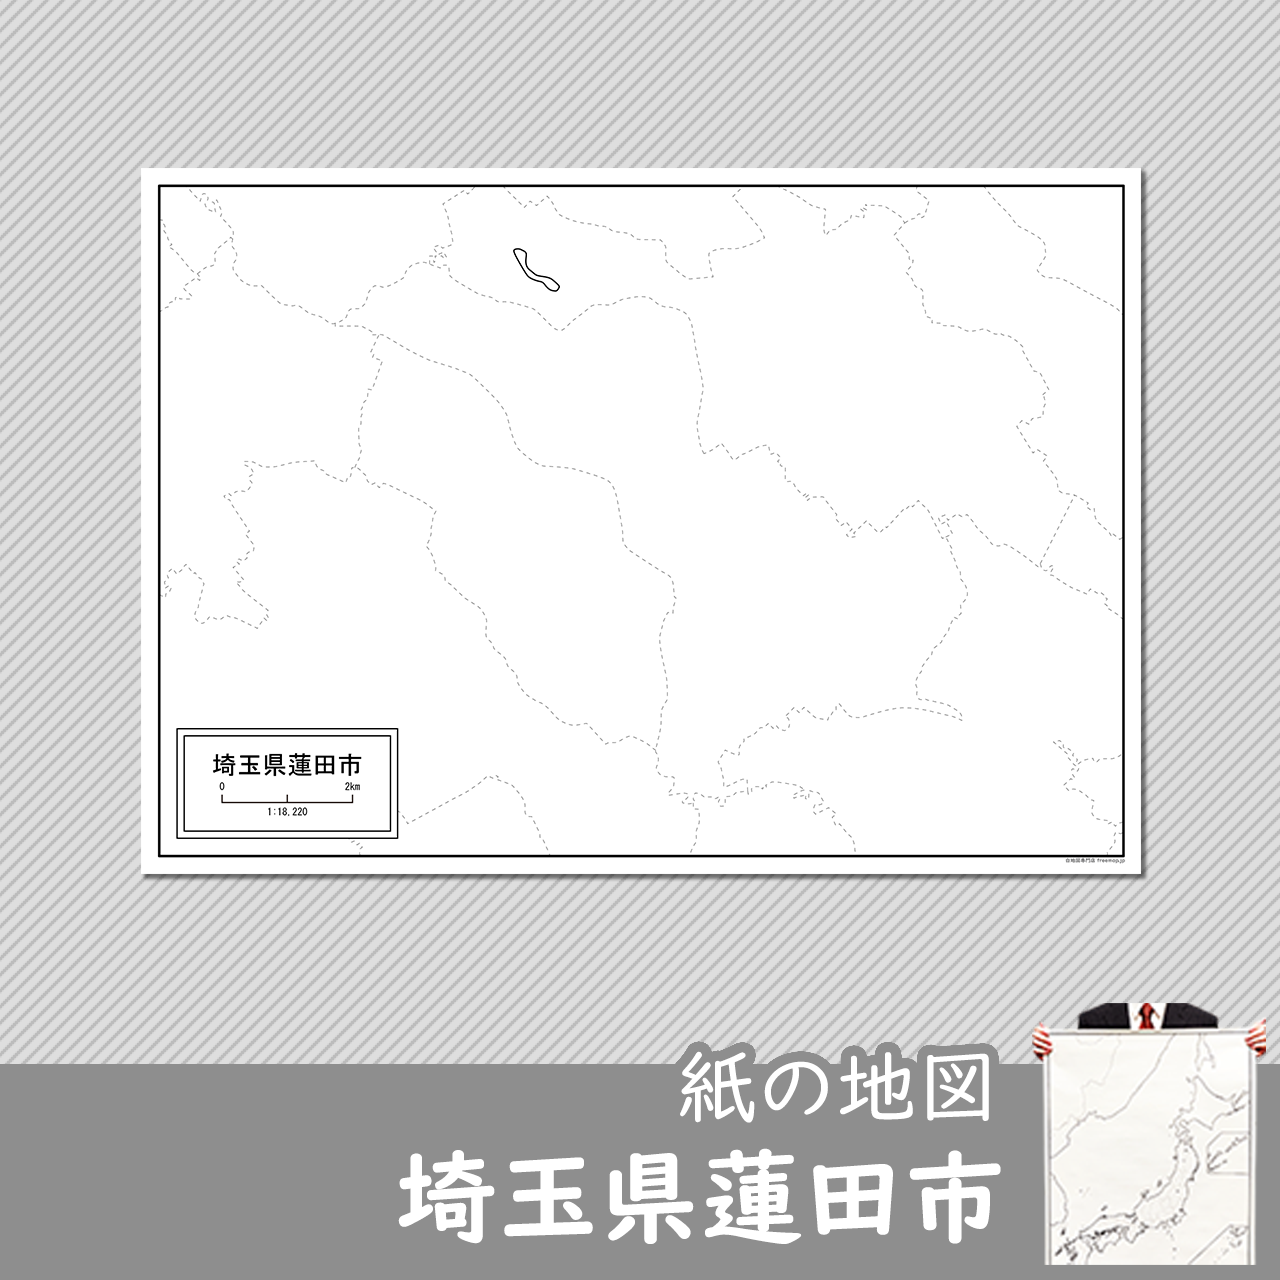 埼玉県蓮田市の紙の白地図